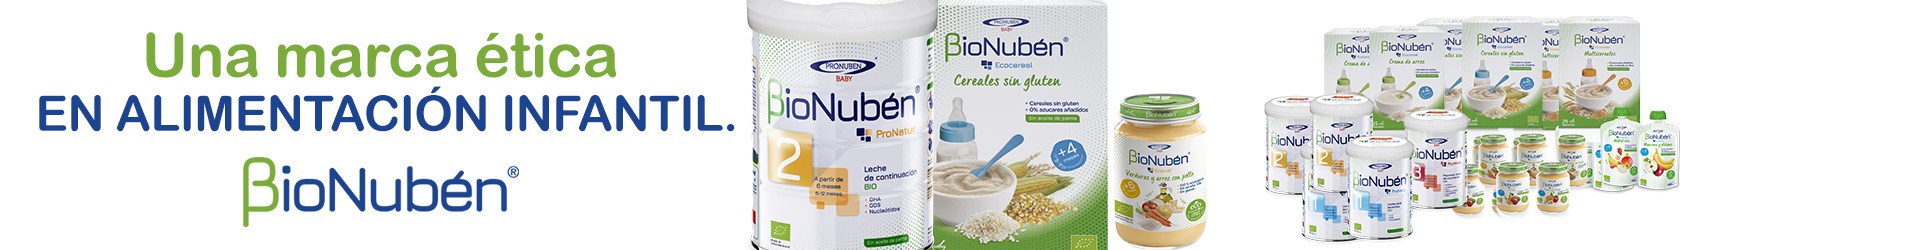 BioNuben gama productos